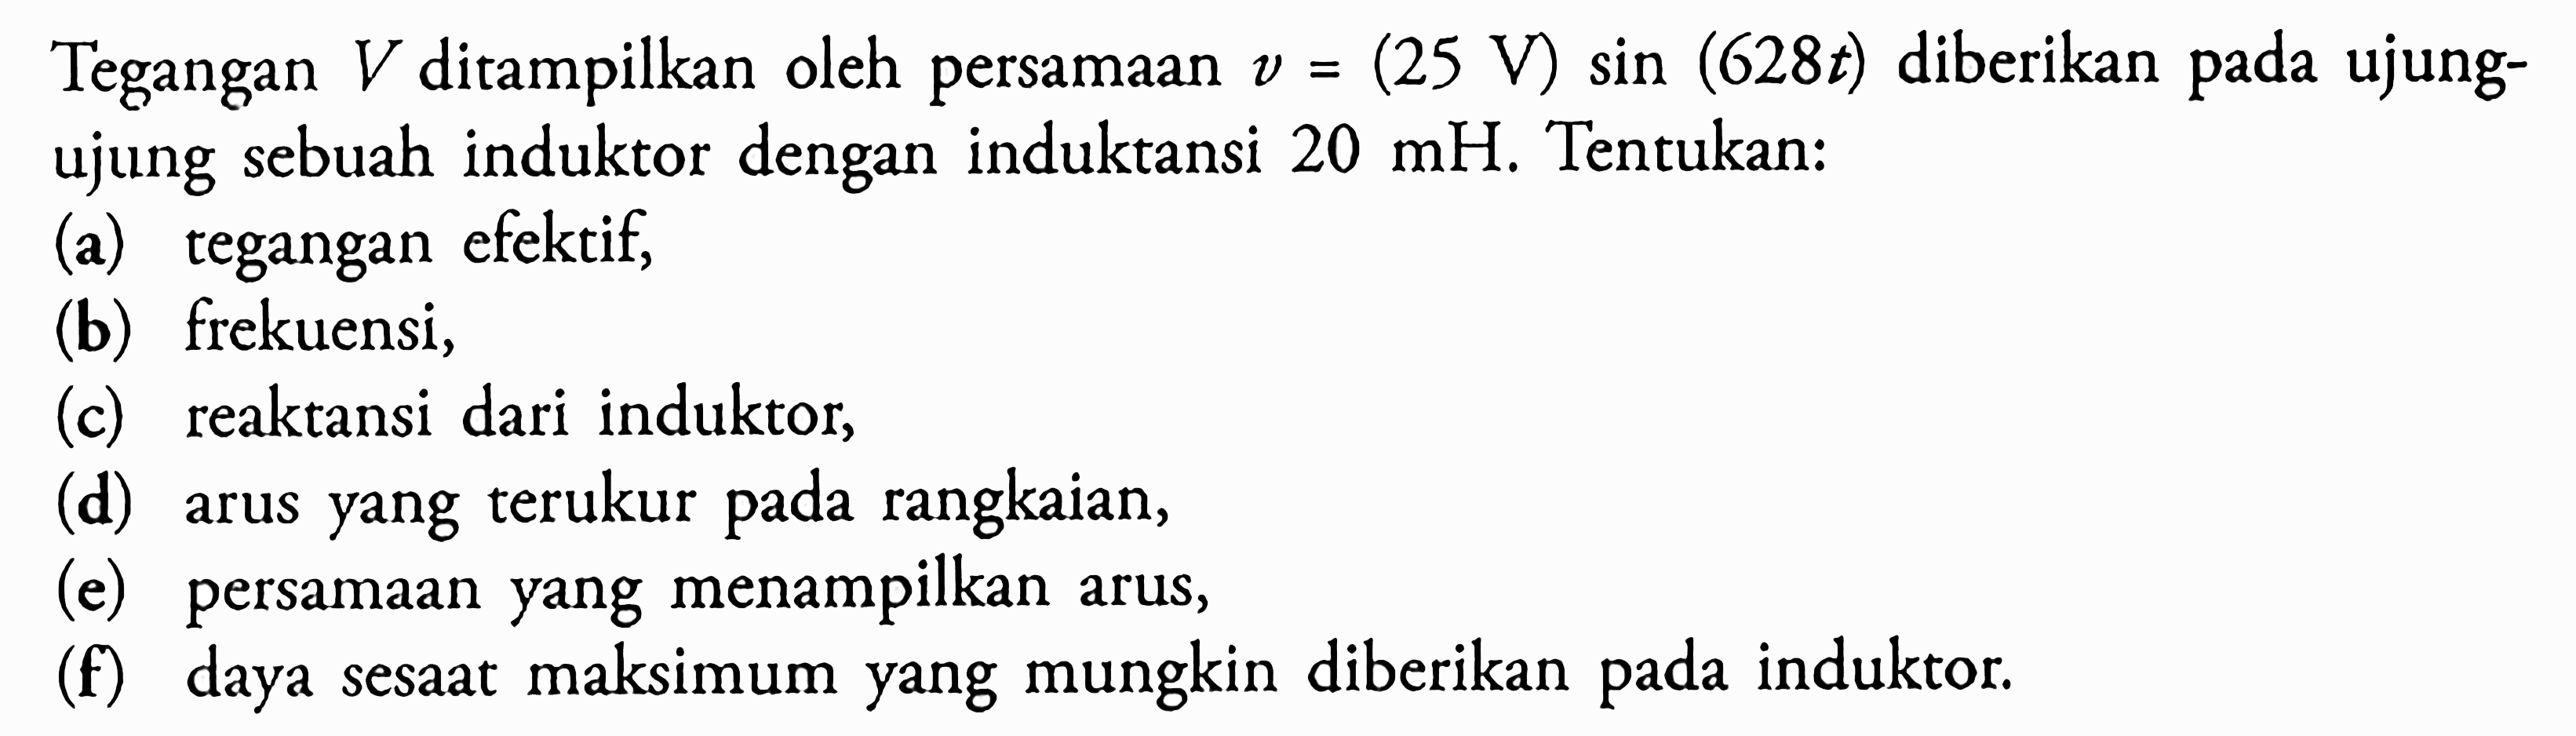 Tegangan V ditampilkan oleh persamaan v=(25 V) sin (628t) diberikan pada ujungujung sebuah induktor dengan induktansi  20 mH. Tentukan: (a) tegangan efektif, (b) frekuensi, (c) reaktansi dari induktor, (d) arus yang terukur pada rangkaian, (e) persamaan yang menampilkan arus, (f) daya sesaat maksimum yang mungkin diberikan pada induktor. 